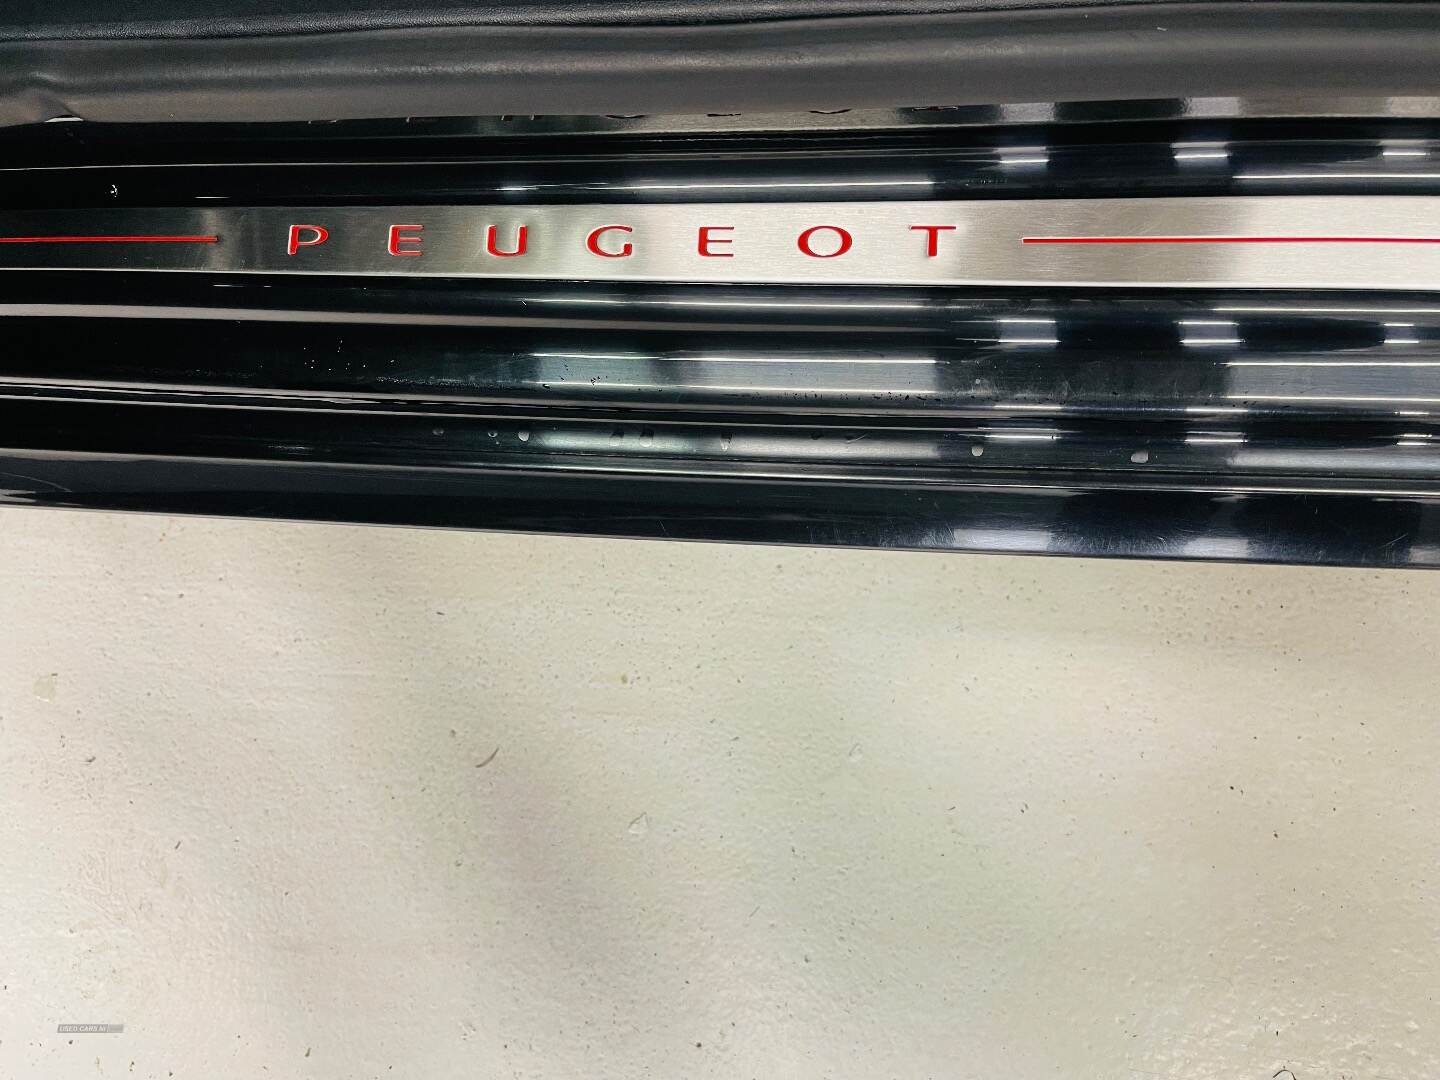 Peugeot 208 HATCHBACK in Antrim